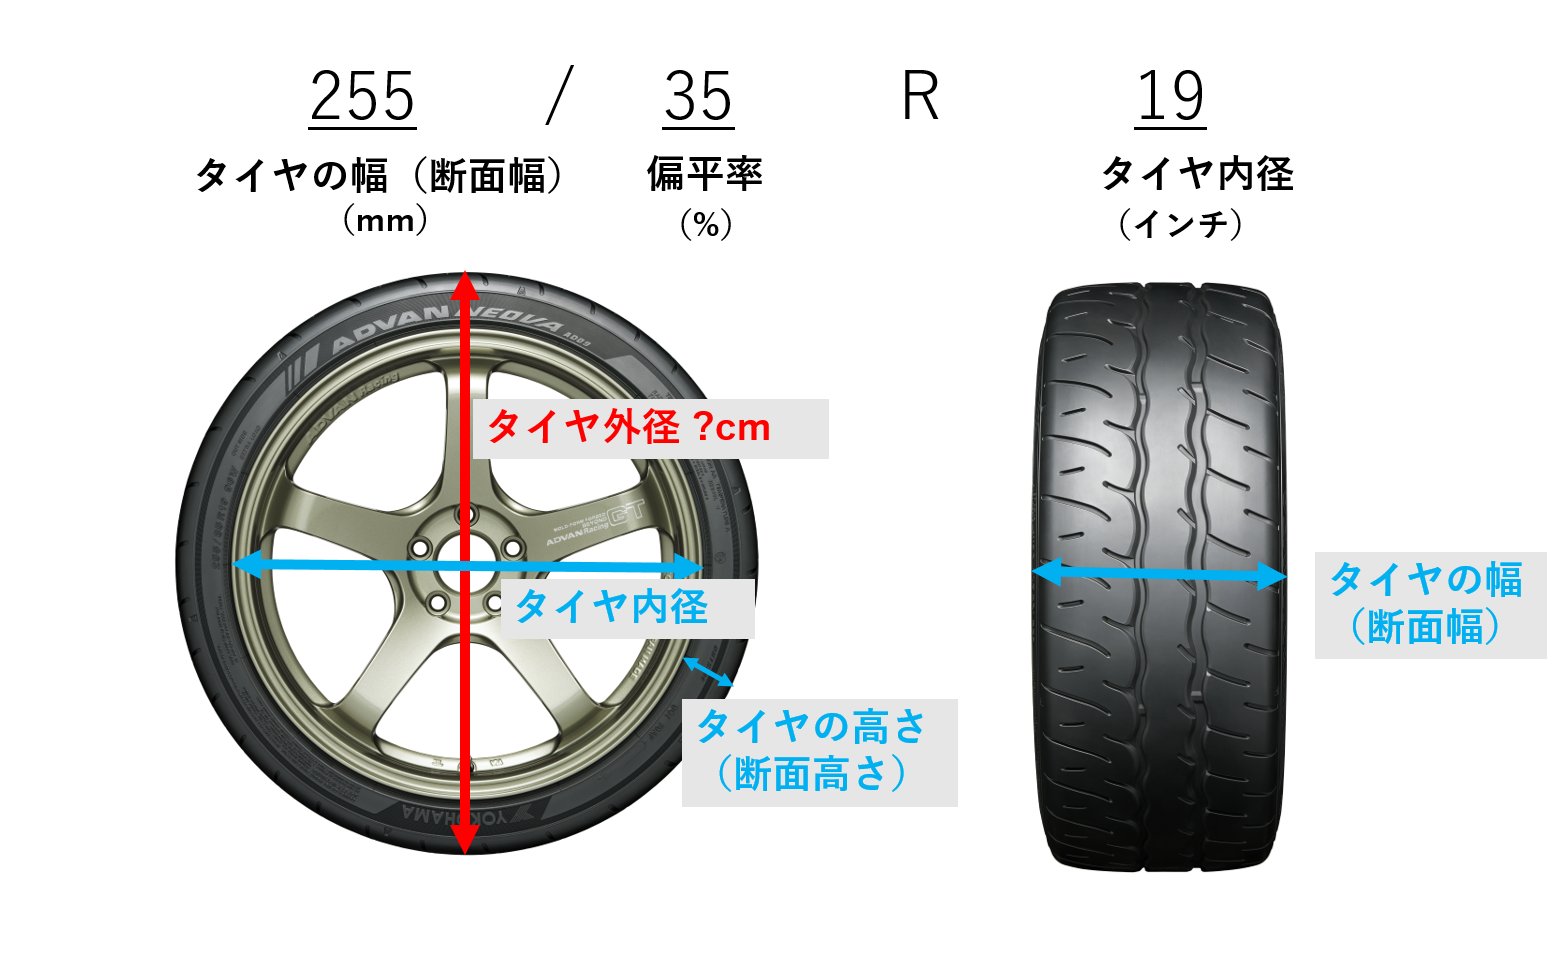 横浜ゴム株式会社 7 21のタイヤ外径計算問題はいかがでしたか 答えは の66 1でした 計算式 255mm 35 2 10mm 19インチ 2 54cm 66 11cm タイヤのサイズについて理解を深めていただけたなら タイヤメーカーとしてうれしい限りです Twitter